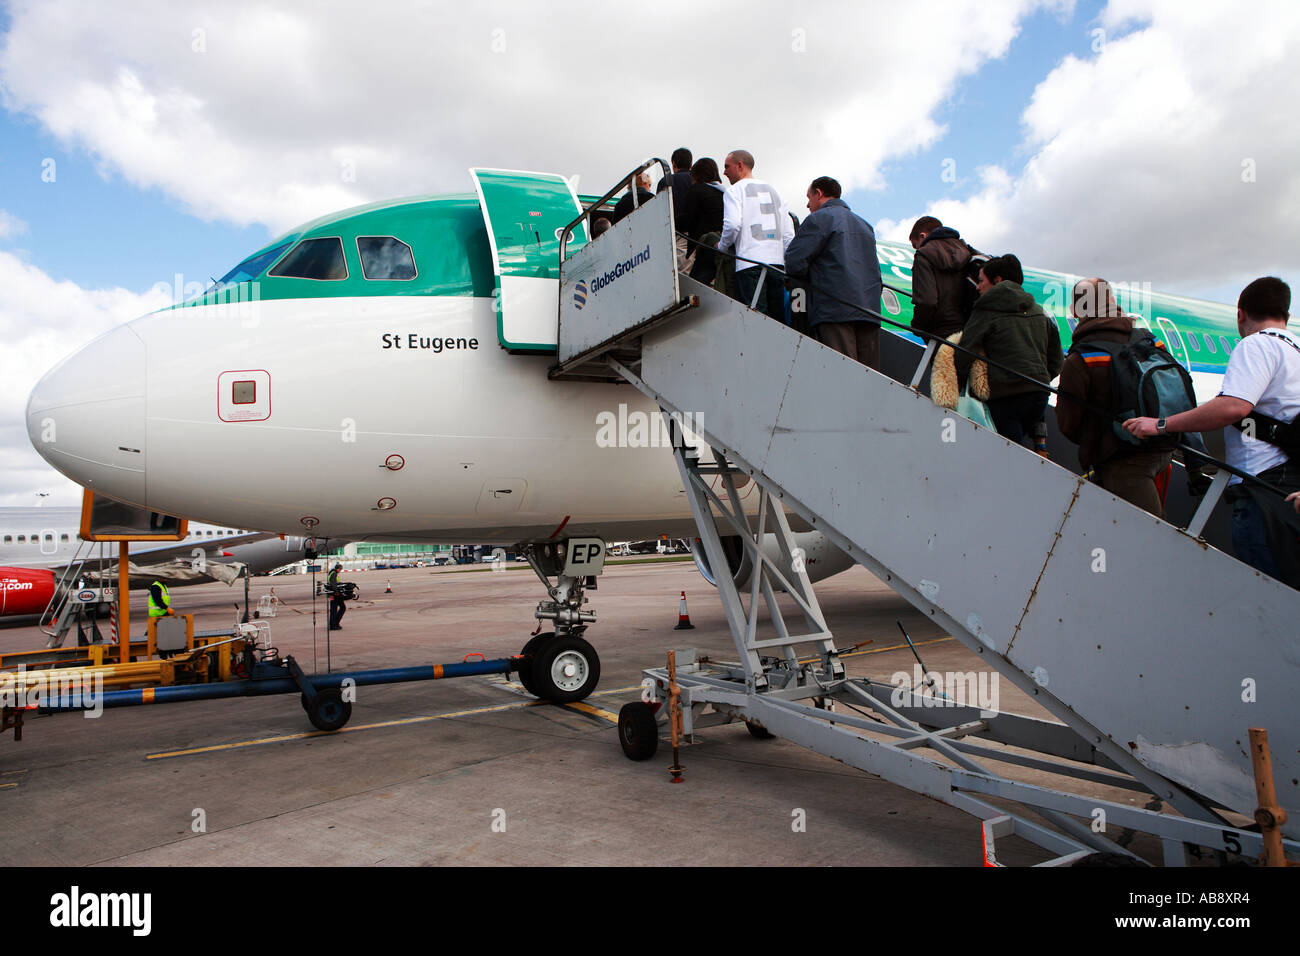 L'embarquement Aer Lingus avec ciel bleu Banque D'Images